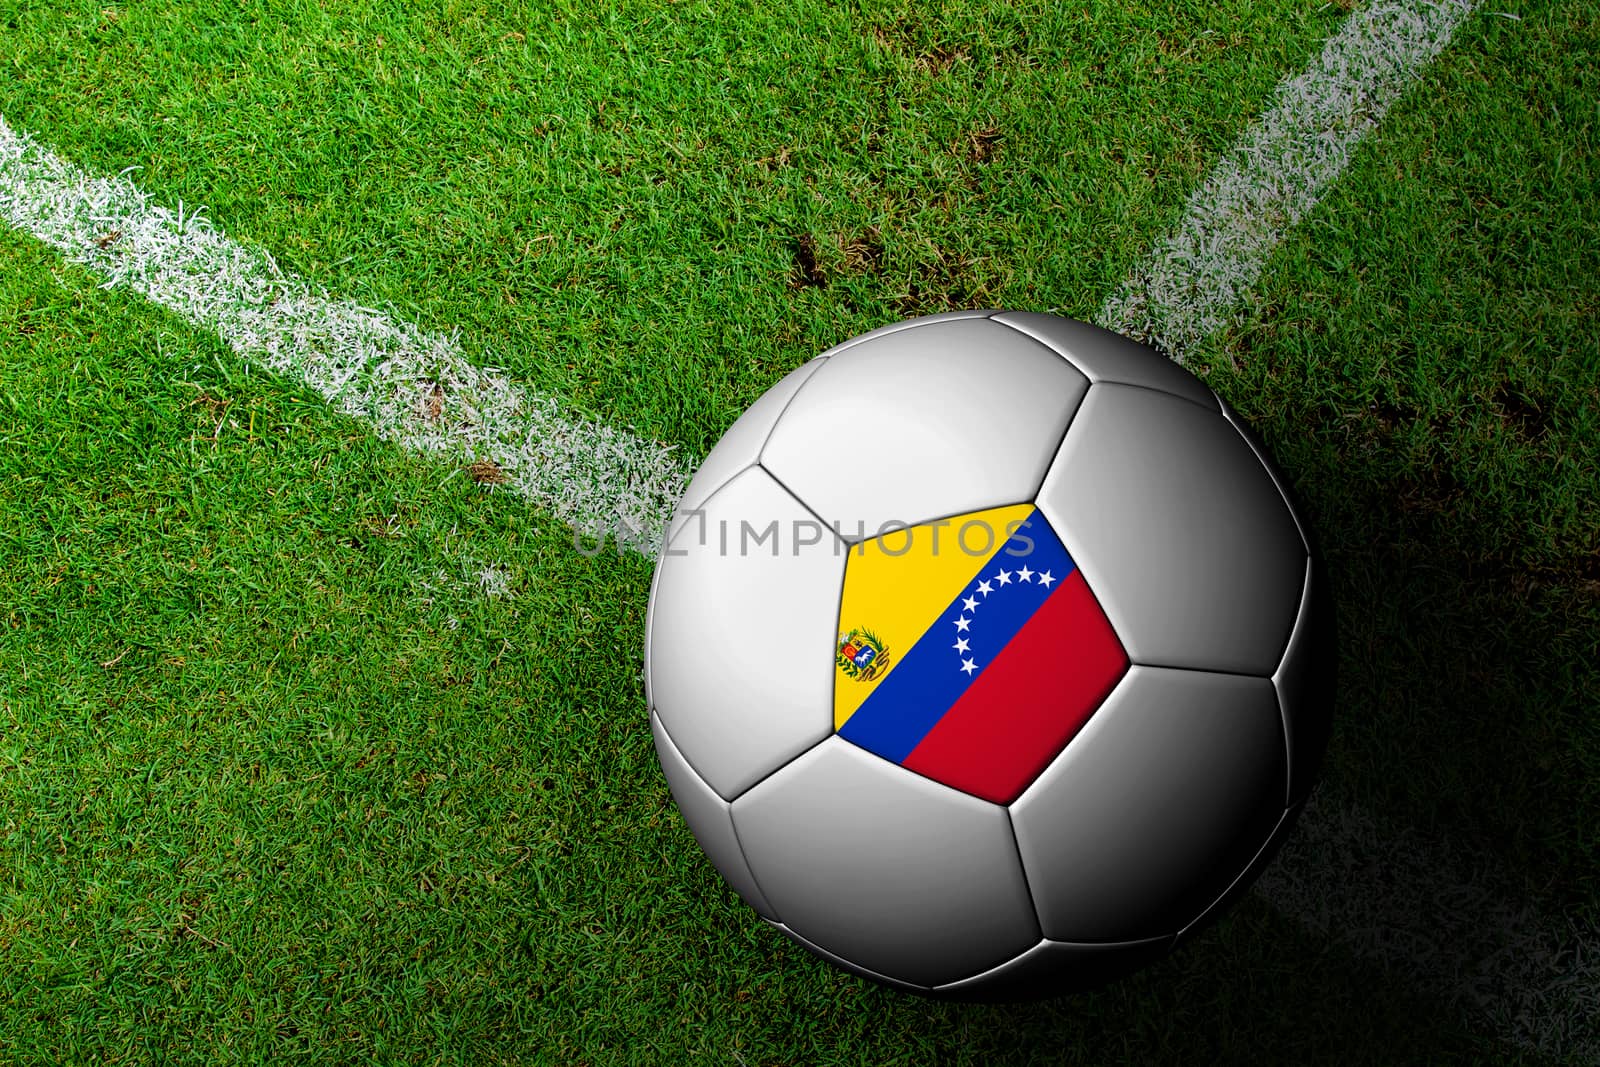 Venezuela Flag Pattern of a soccer ball in green grass